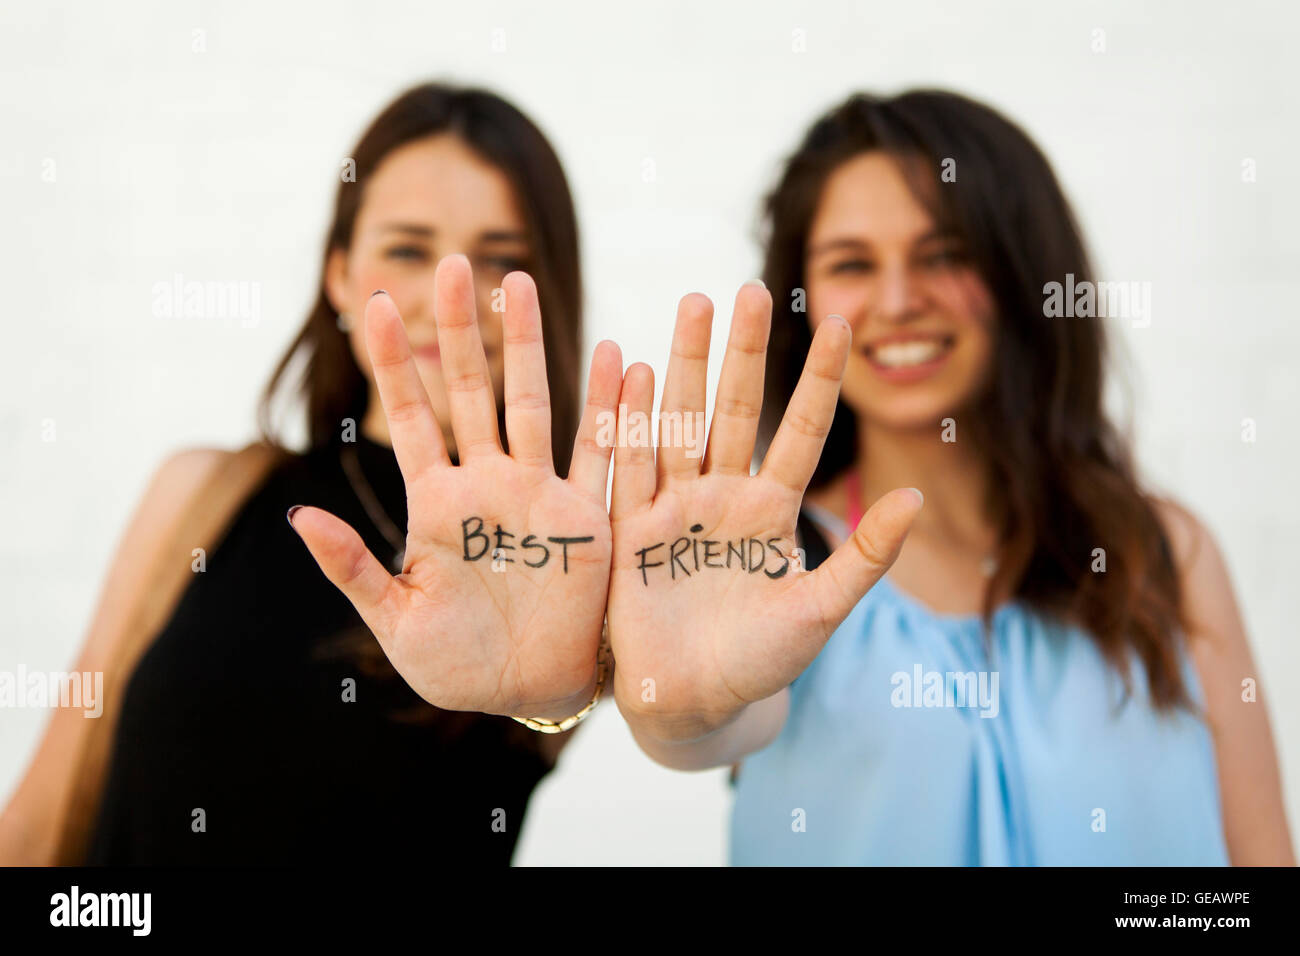 Zwei Junge Frauen Zeigen Ihre Handflächen Mit Dem Schreiben Von Beste Freunde Stockfotografie 